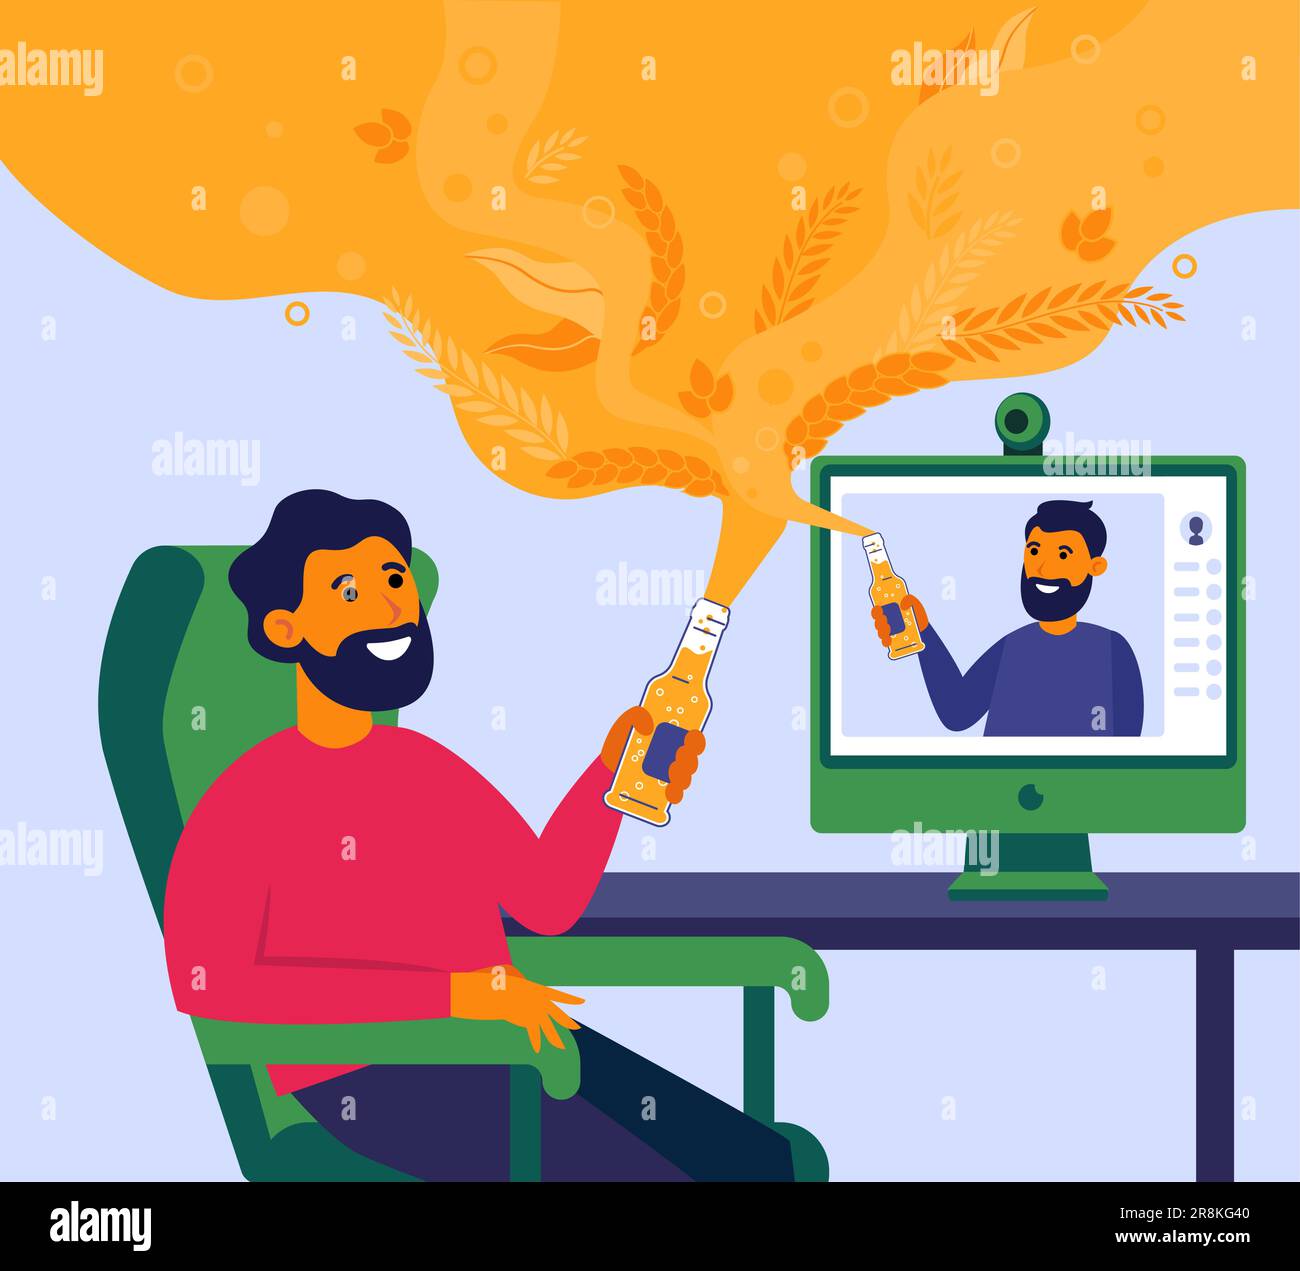 Homme buvant de la bière en ligne avec son ami Illustration de Vecteur